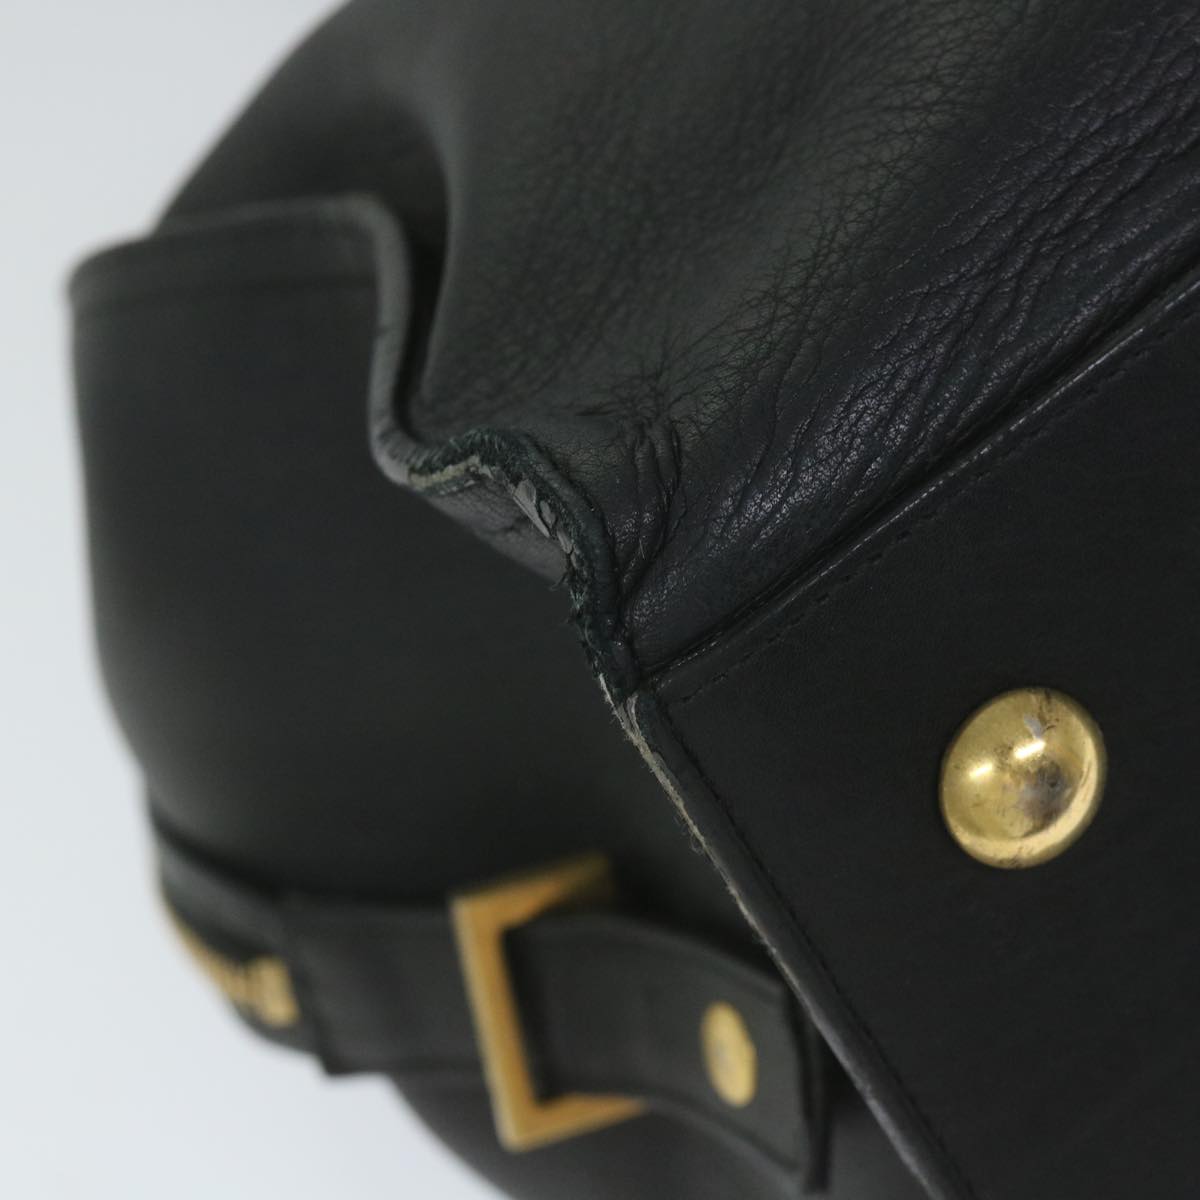 SAINT LAURENT Hand Bag Leather Black Auth bs9439